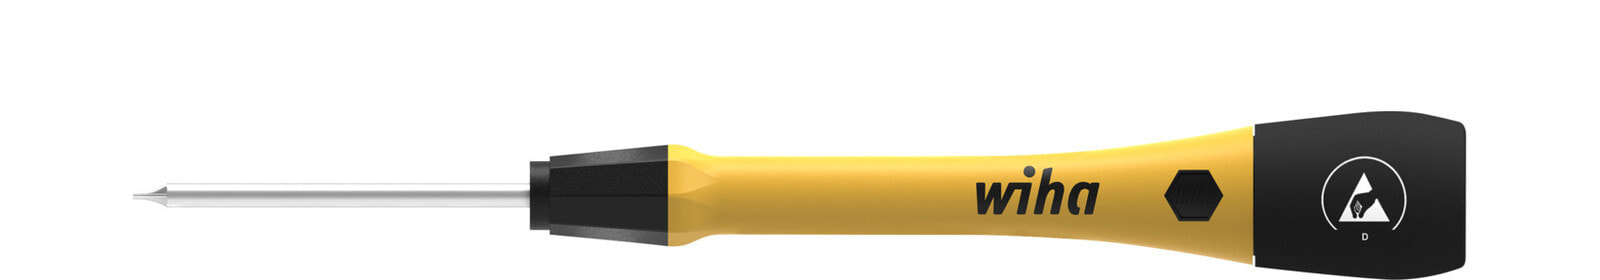 С тонкой отверткой PicoFinish ESD. Вес: 12 г. Цвет ручки: Черный/желтый